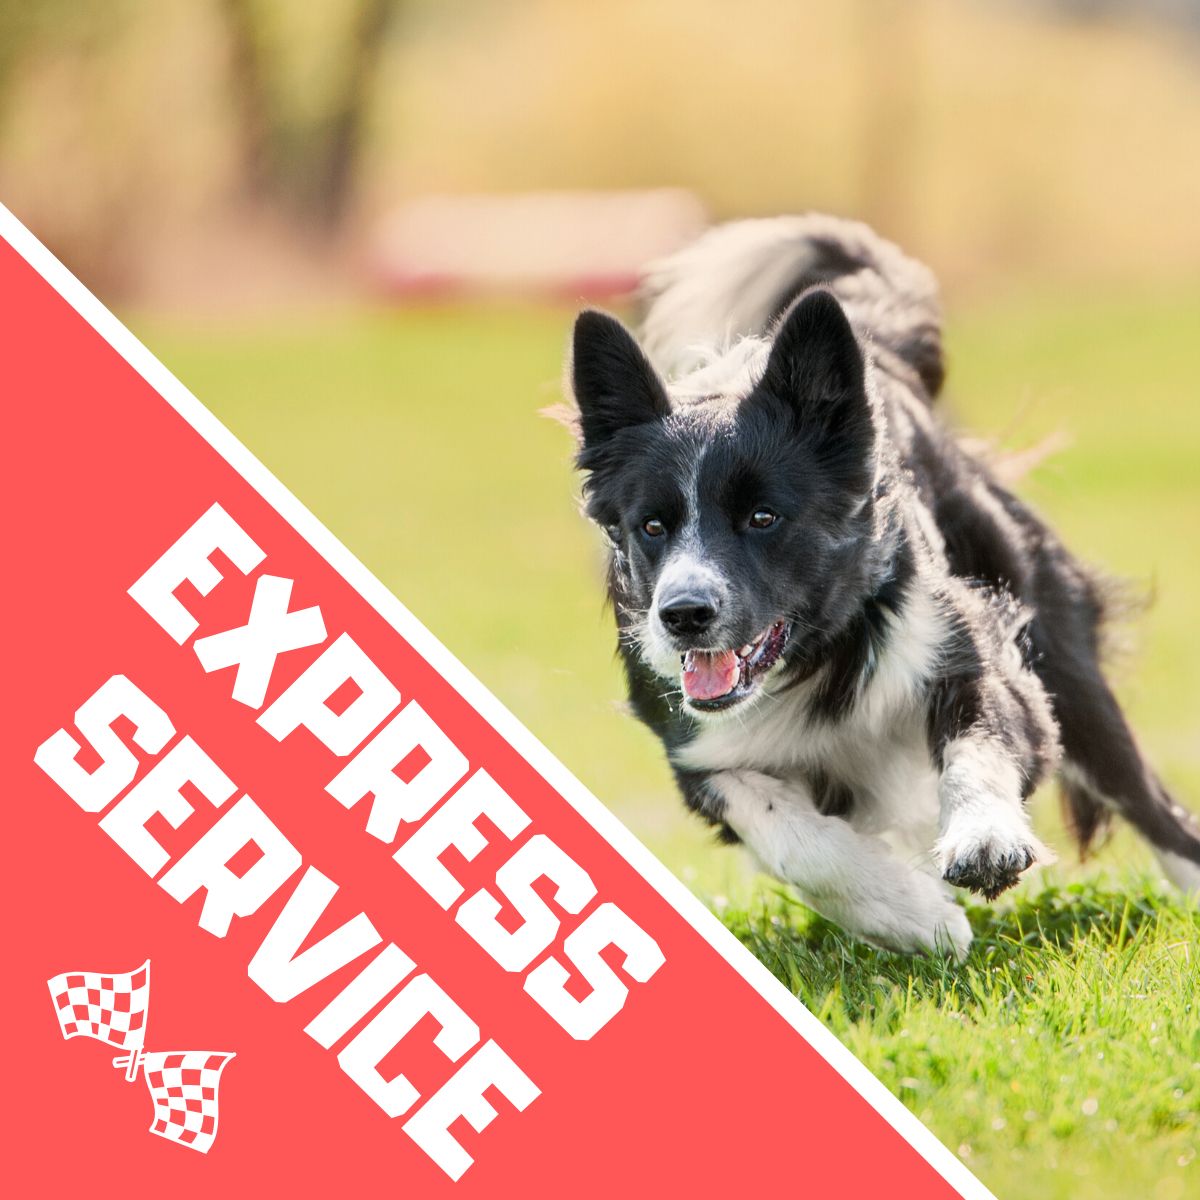 Express Service - Dein Gemälde wird sofort erstellt